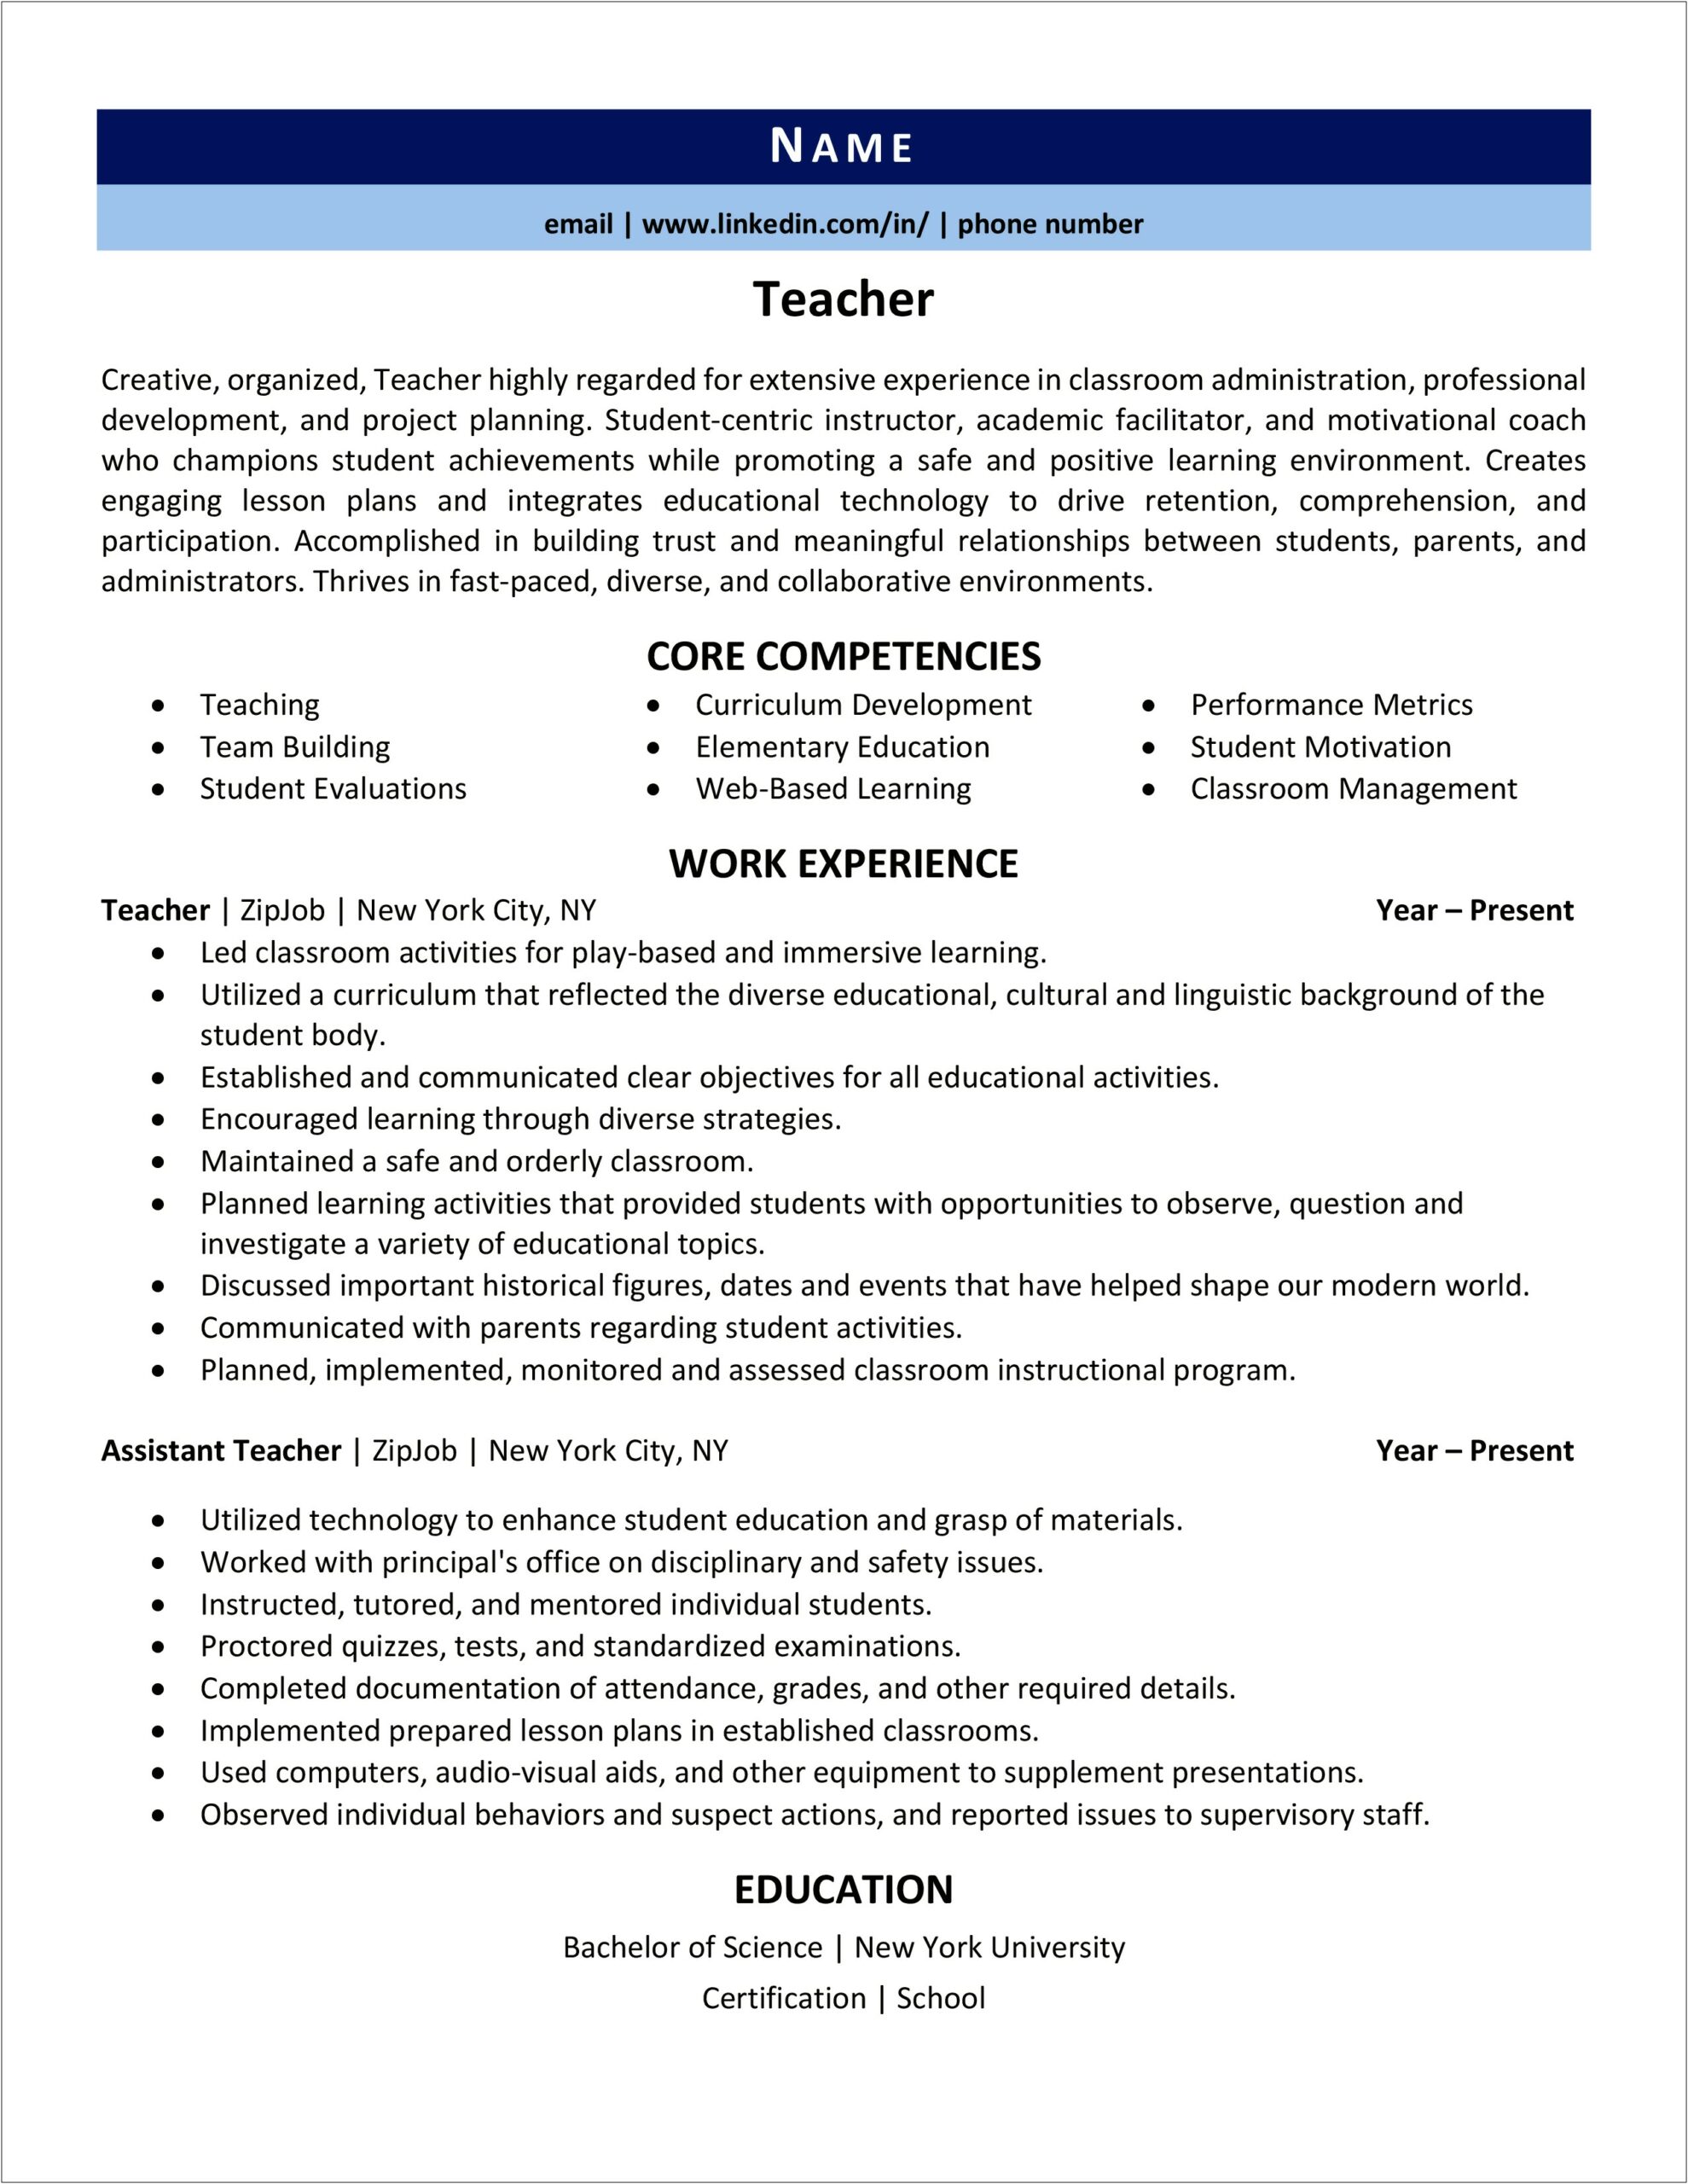 Responsibilites Of Elementry School Teacher For Resume